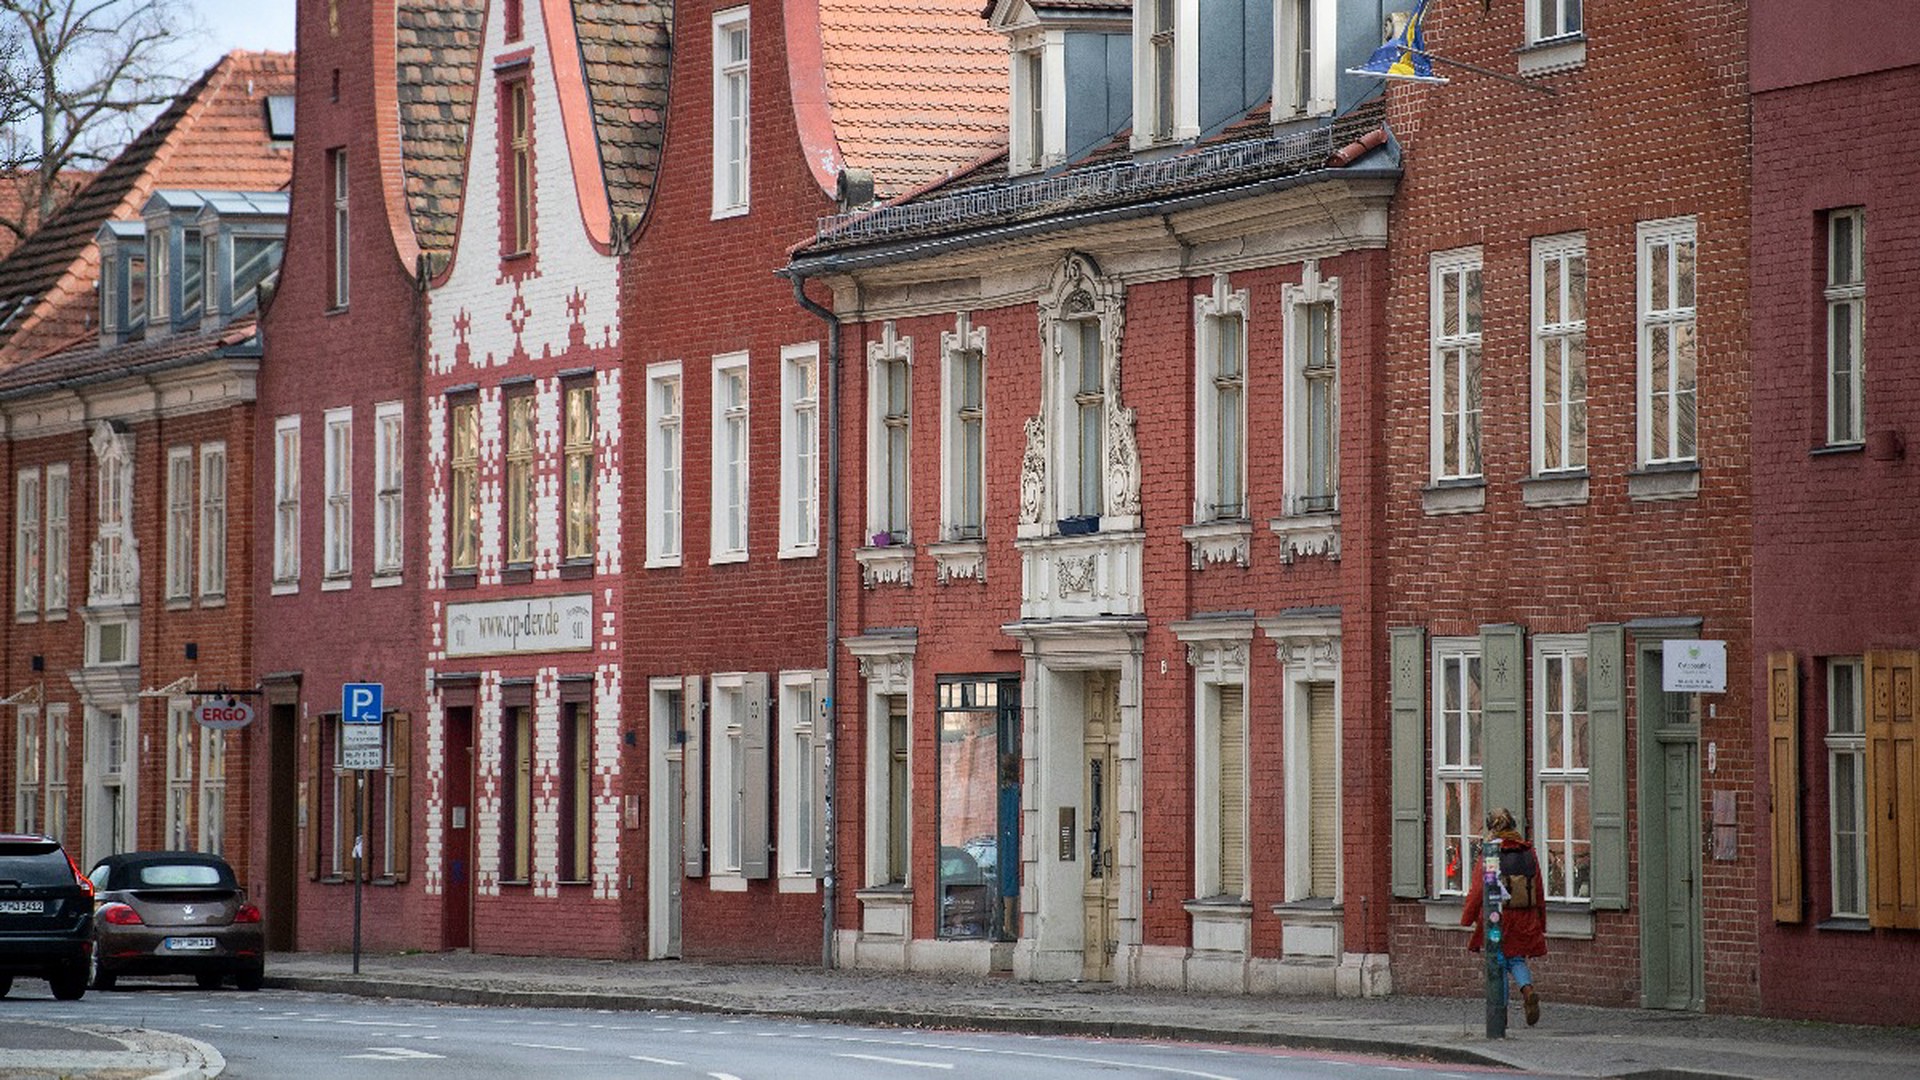 Окна в квартале красных фонарей в Амстердаме могут навсегда закрыть 